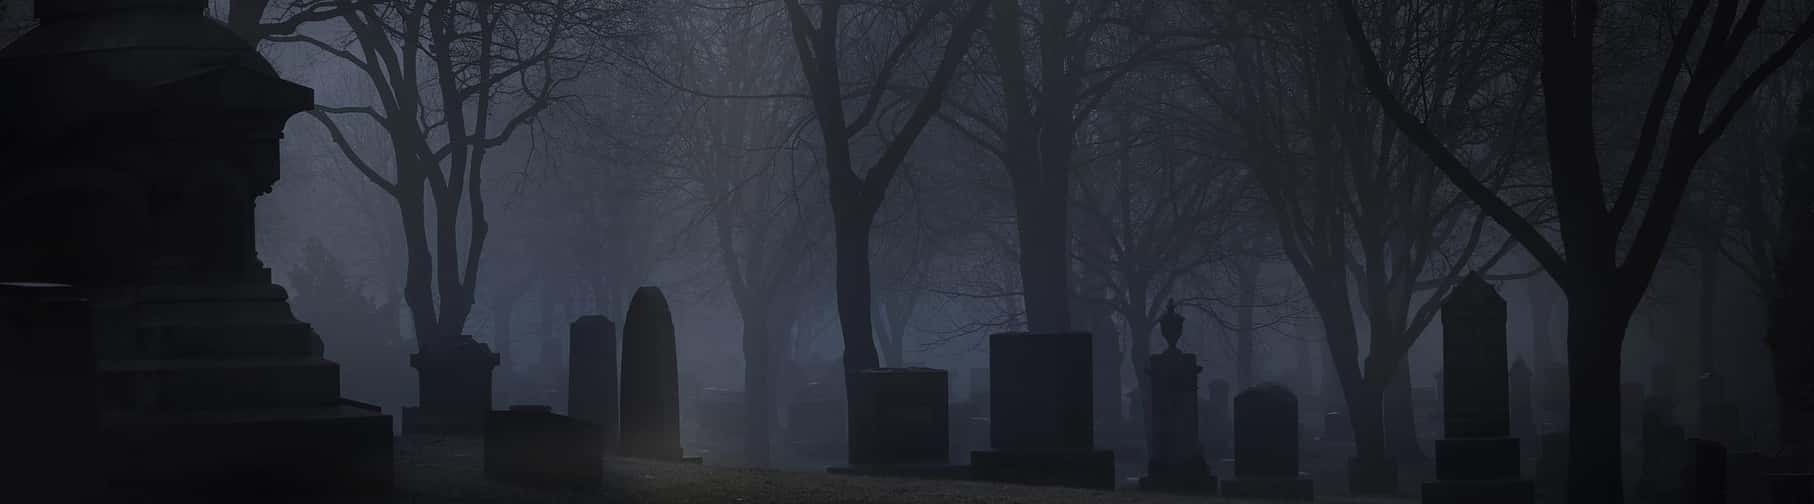 Uno de los cementerios embrujados que visitamos durante los Tours de Fantasmas para Grupos